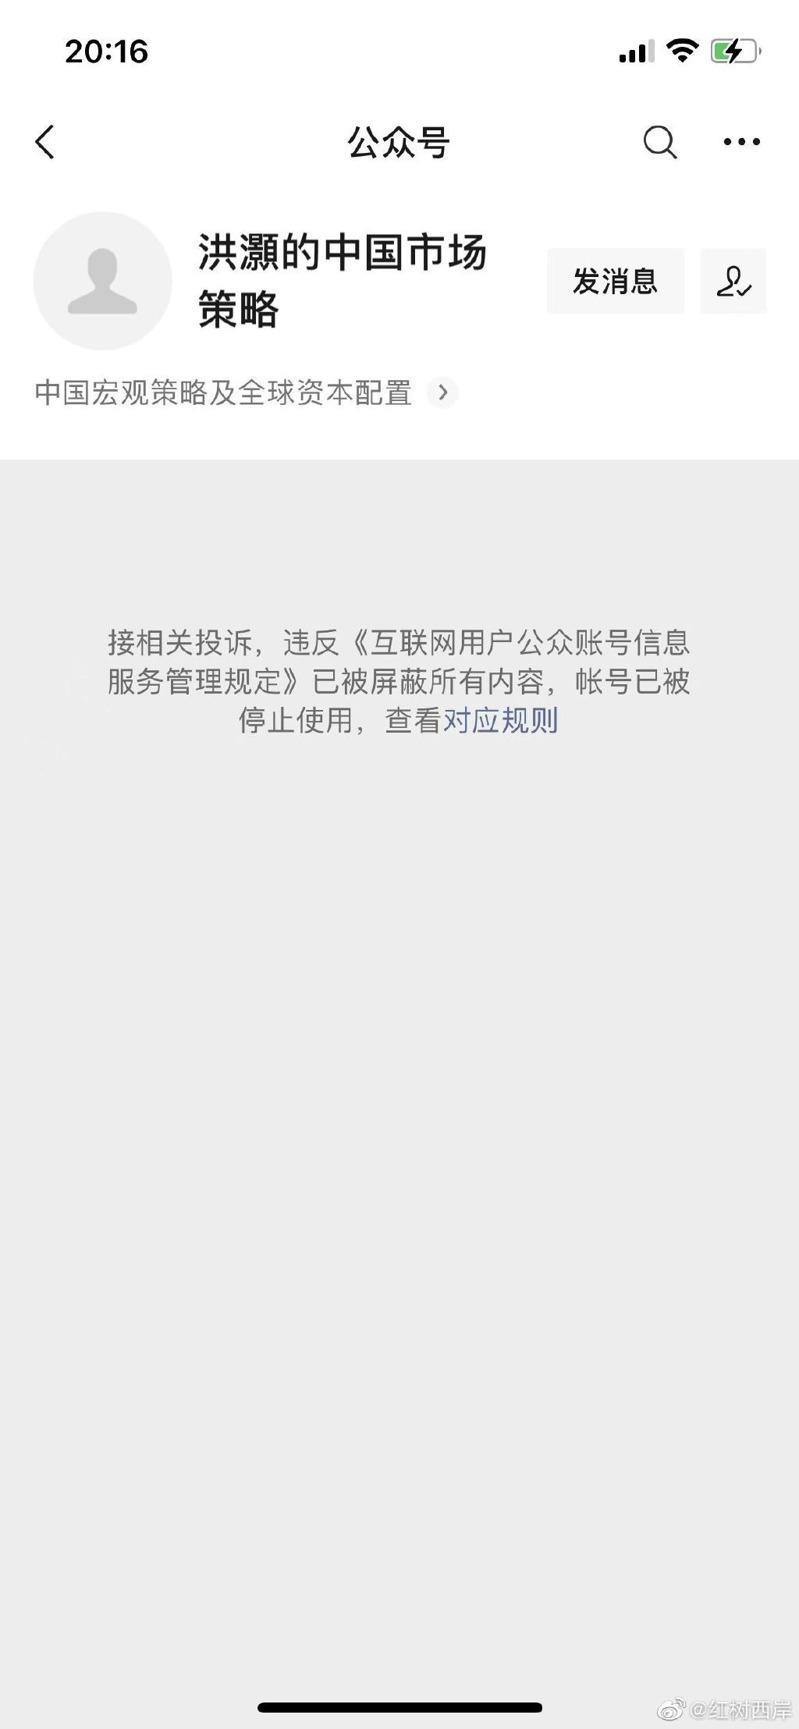 洪灏的微信公众号已被下架。（取材自微博）